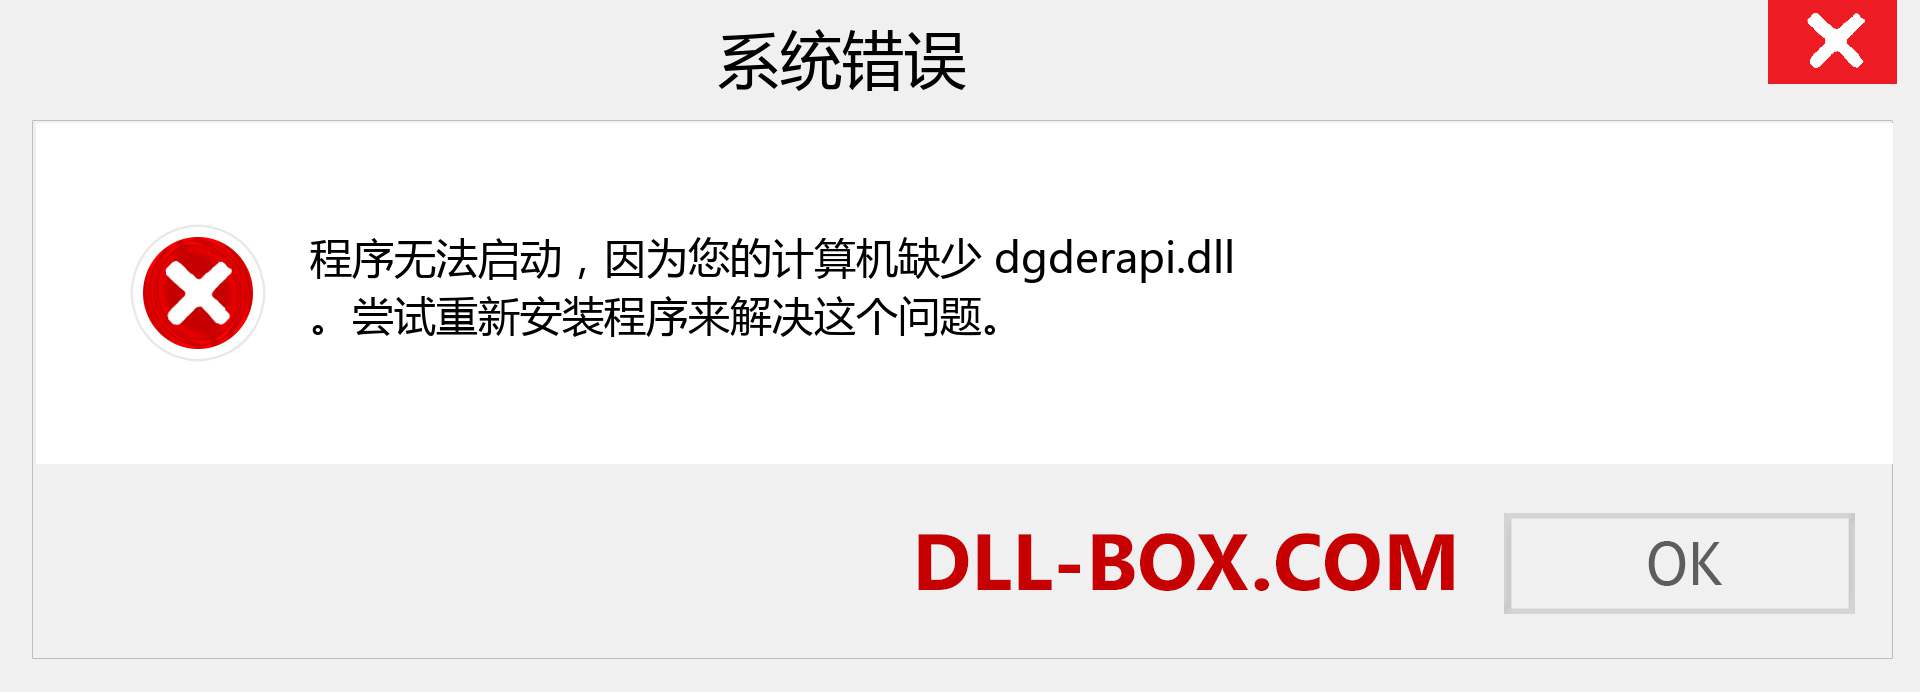 dgderapi.dll 文件丢失？。 适用于 Windows 7、8、10 的下载 - 修复 Windows、照片、图像上的 dgderapi dll 丢失错误